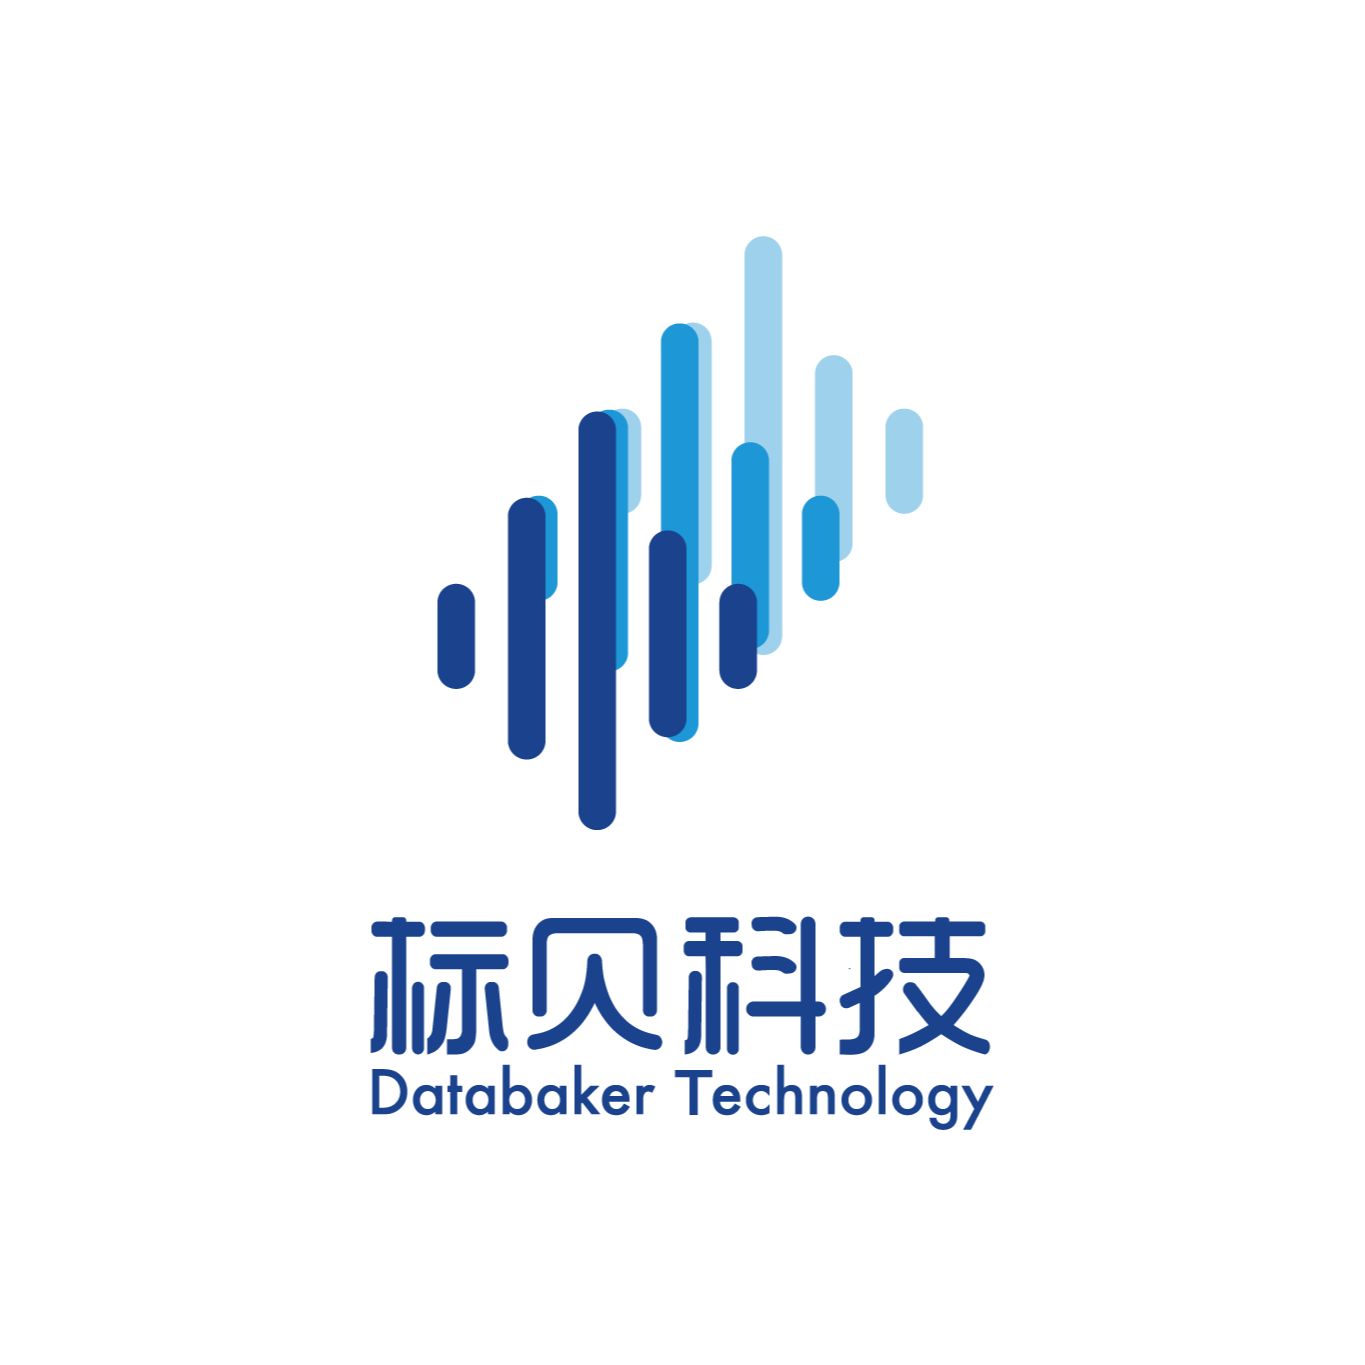 DataBaker Technology logo